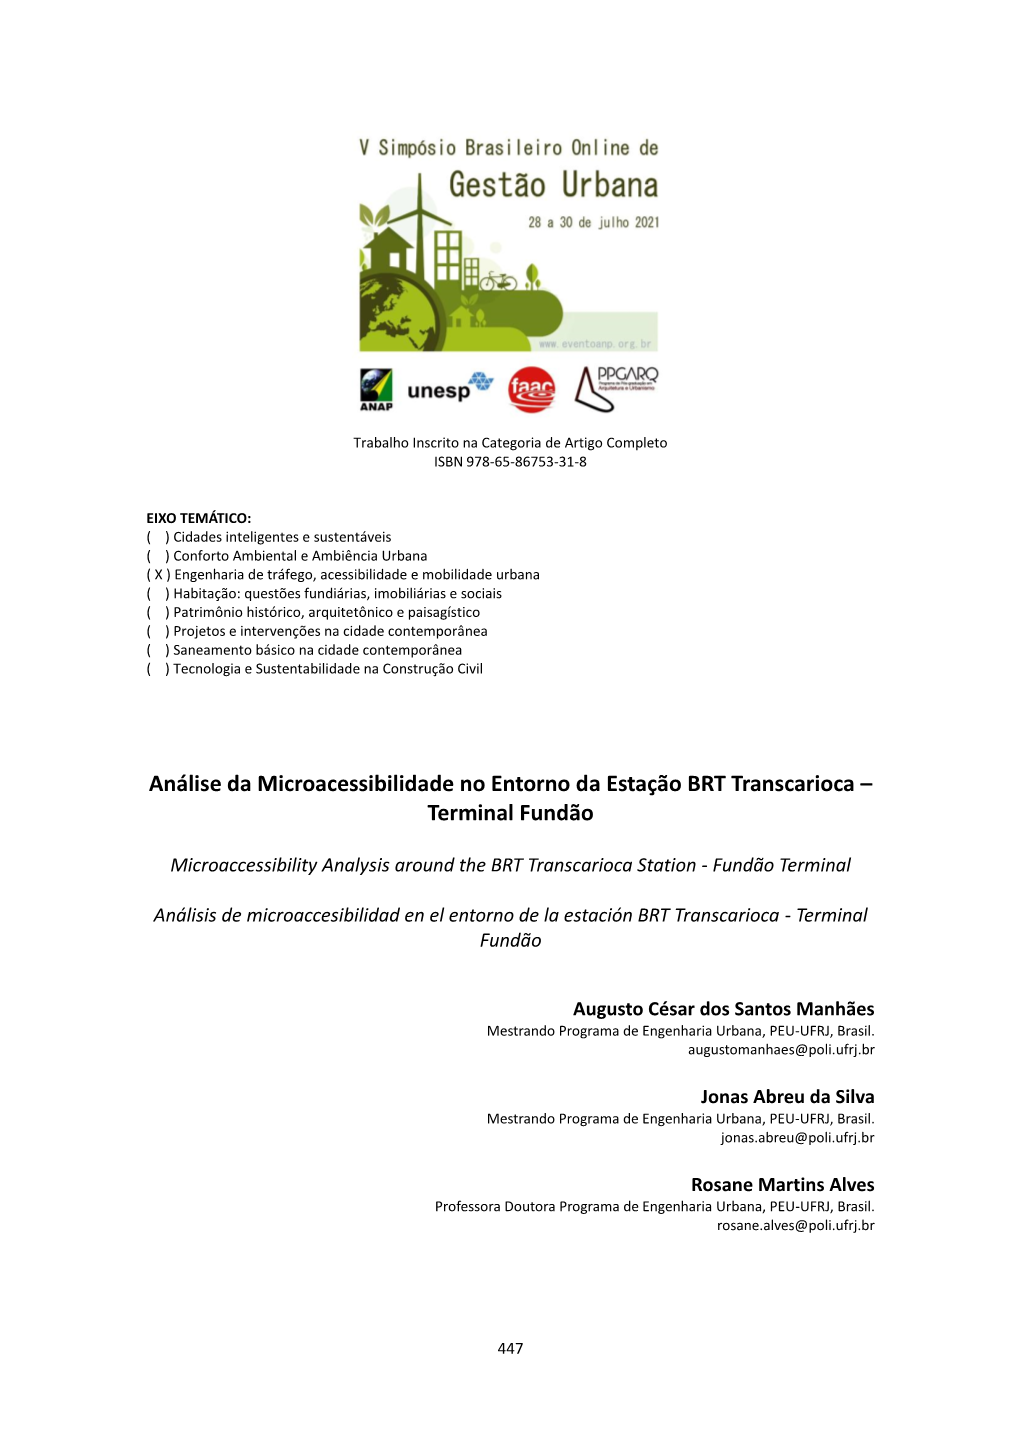 Análise Da Microacessibilidade No Entorno Da Estação BRT Transcarioca – Terminal Fundão